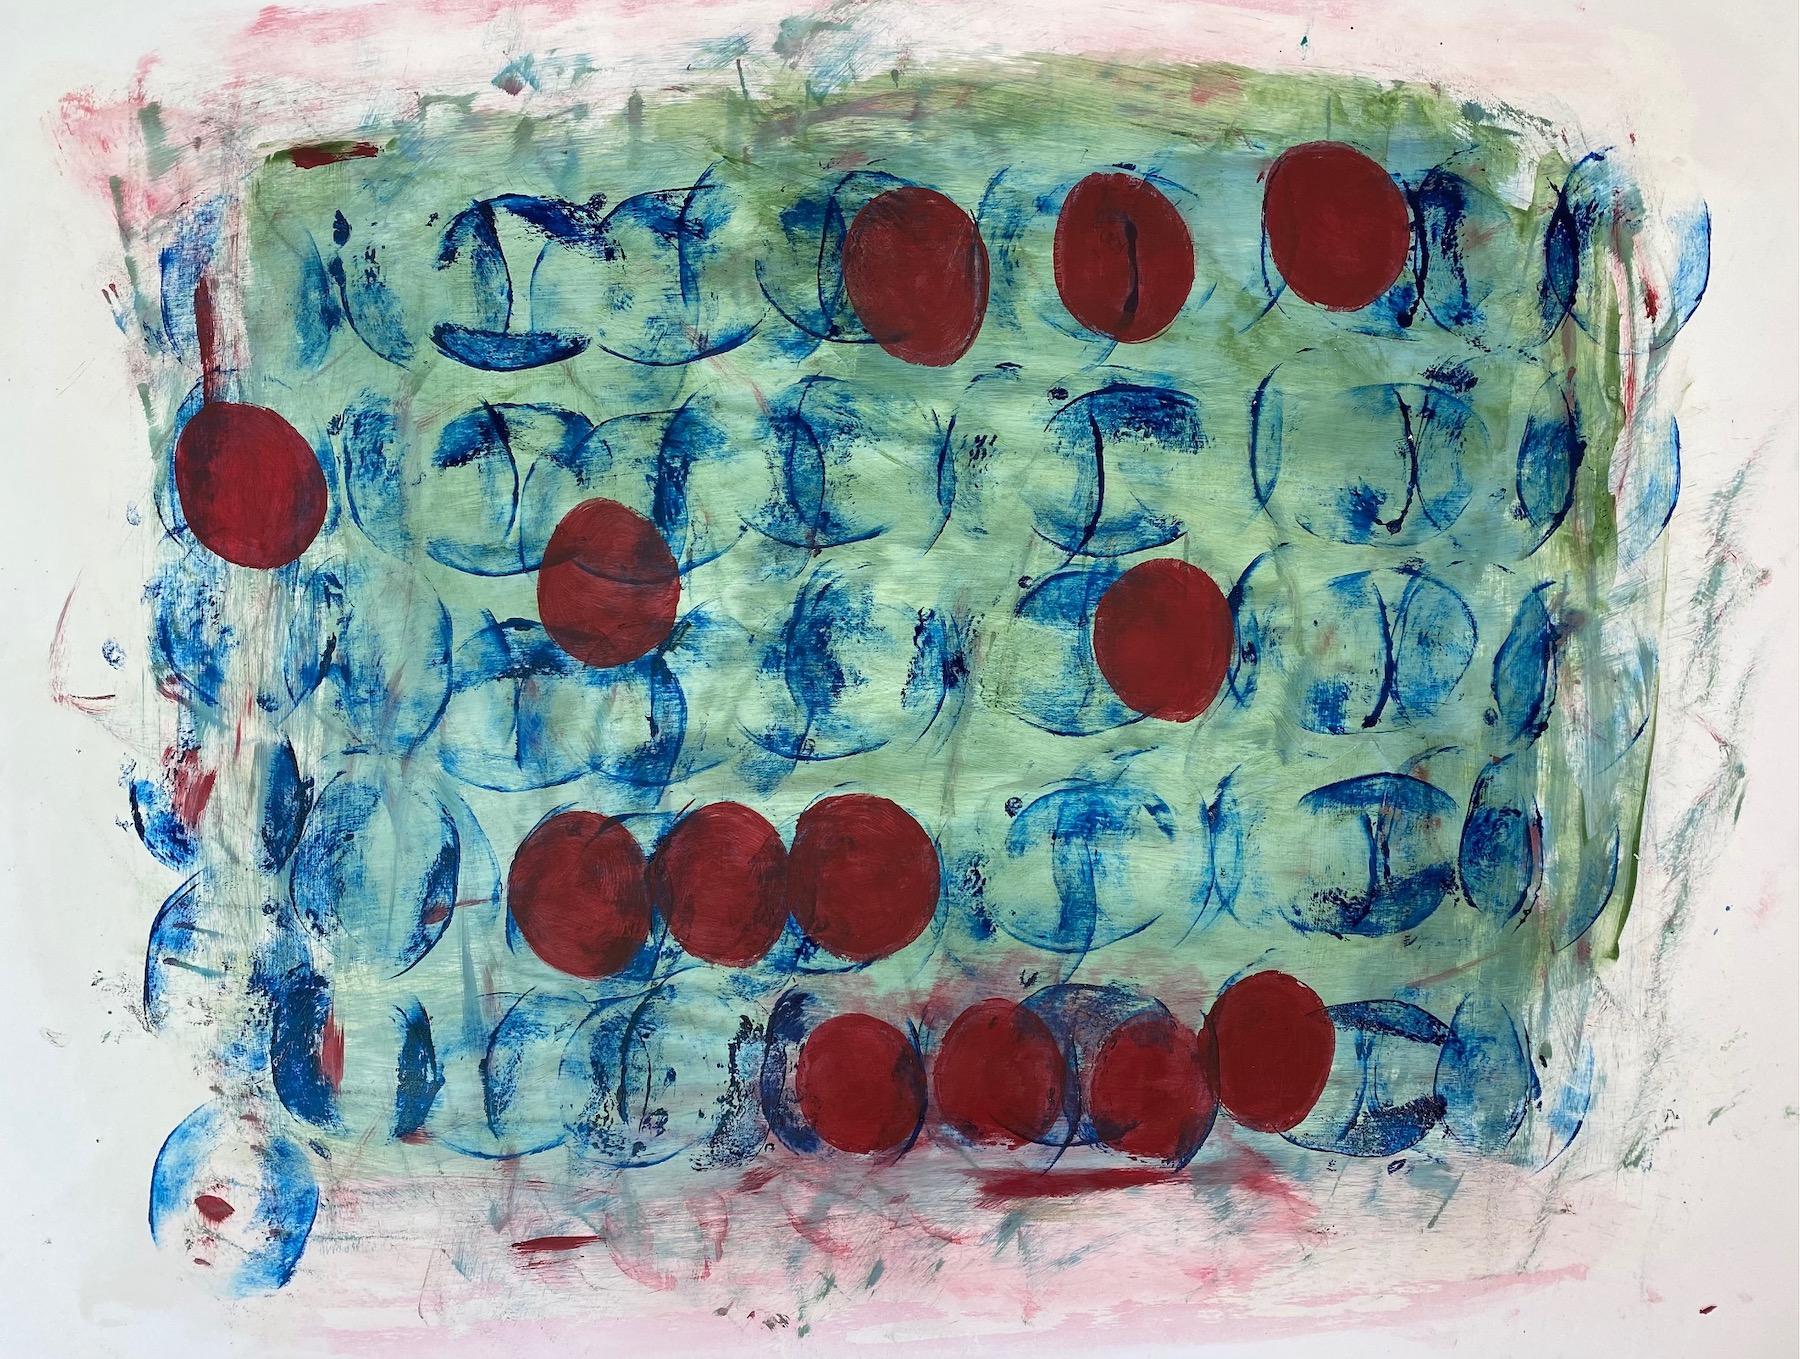 Abstract Painting Lisa Lightman - Sous l'eau : cercles rouges contre fond bleu 